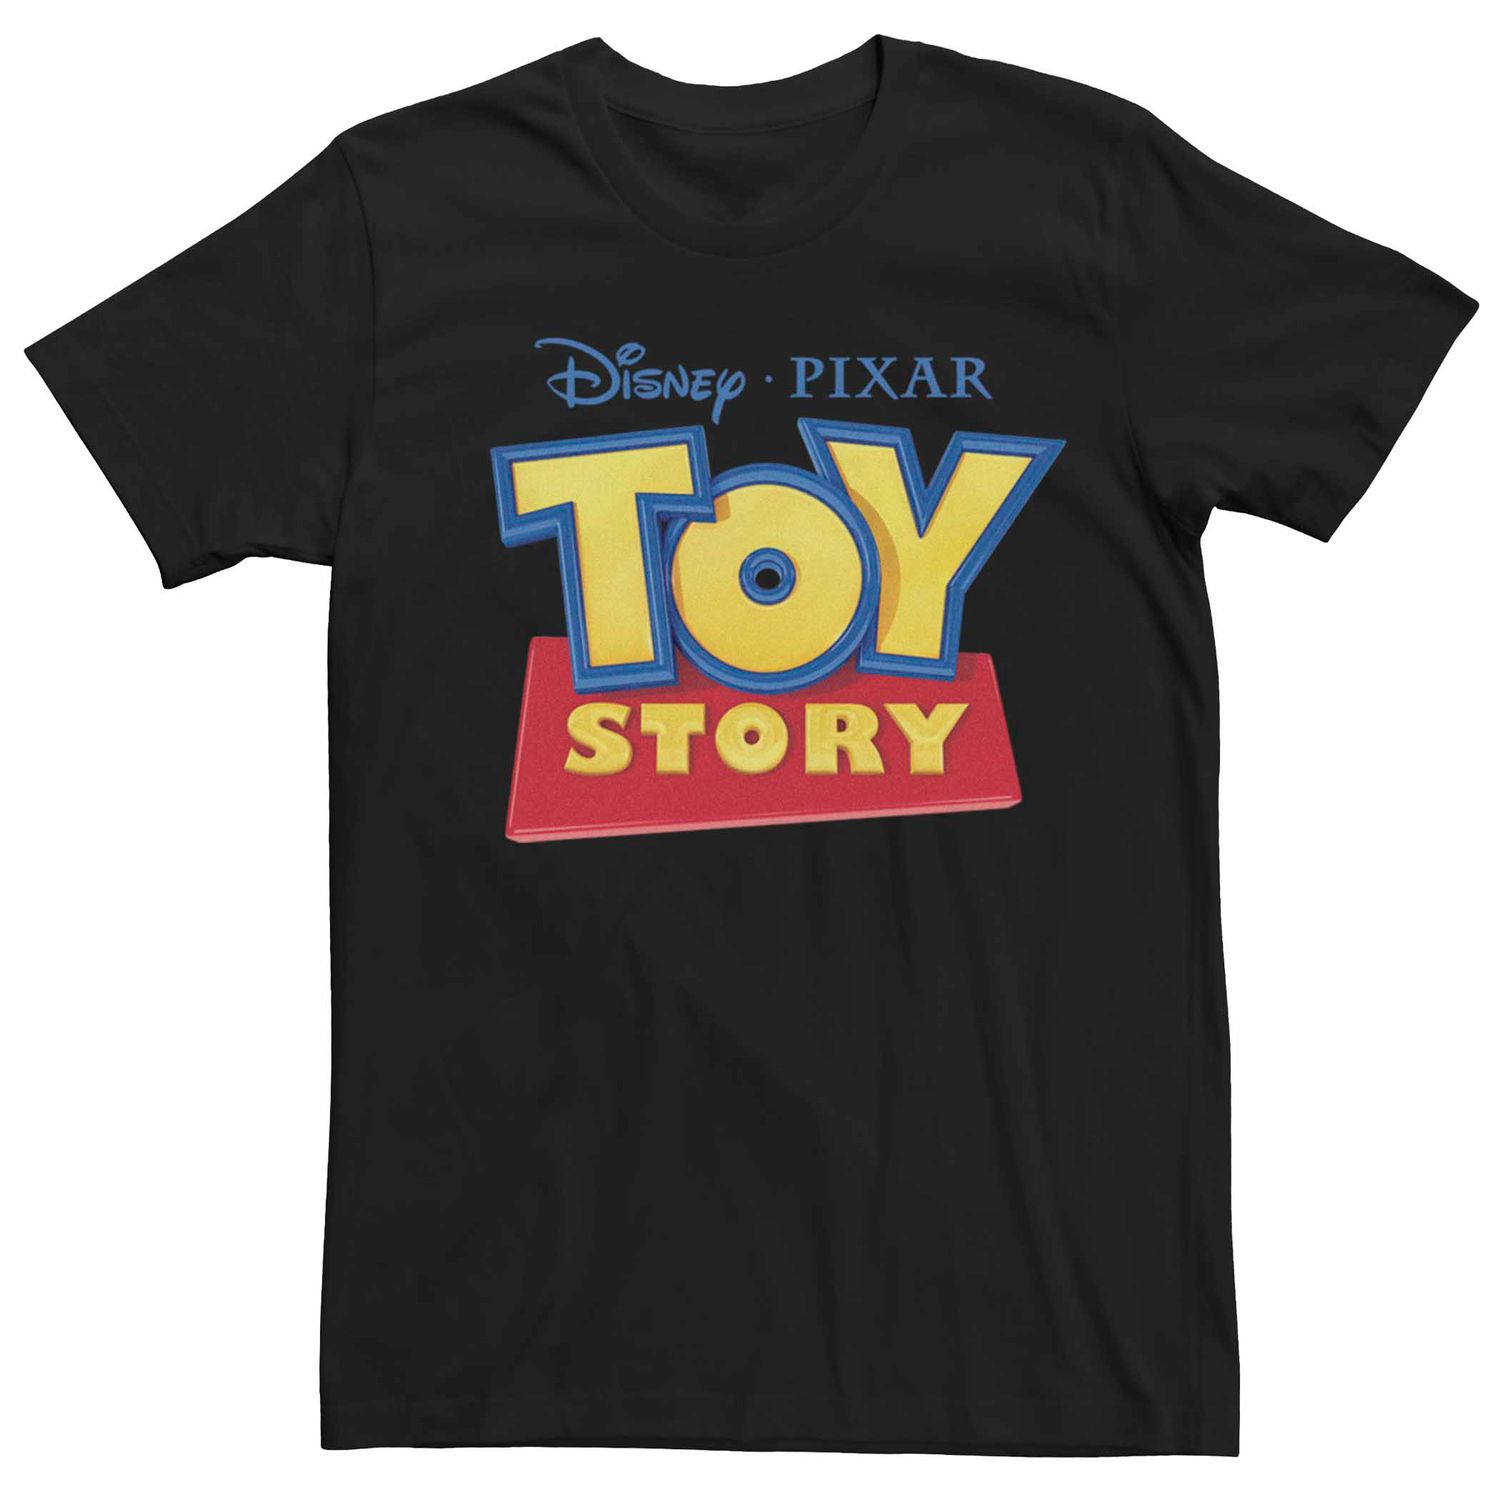 Мужская футболка с графическим логотипом и логотипом классического фильма Disney Pixar Toy Story Licensed Character мужская футболка с логотипом фильма хороший динозавр disney pixar